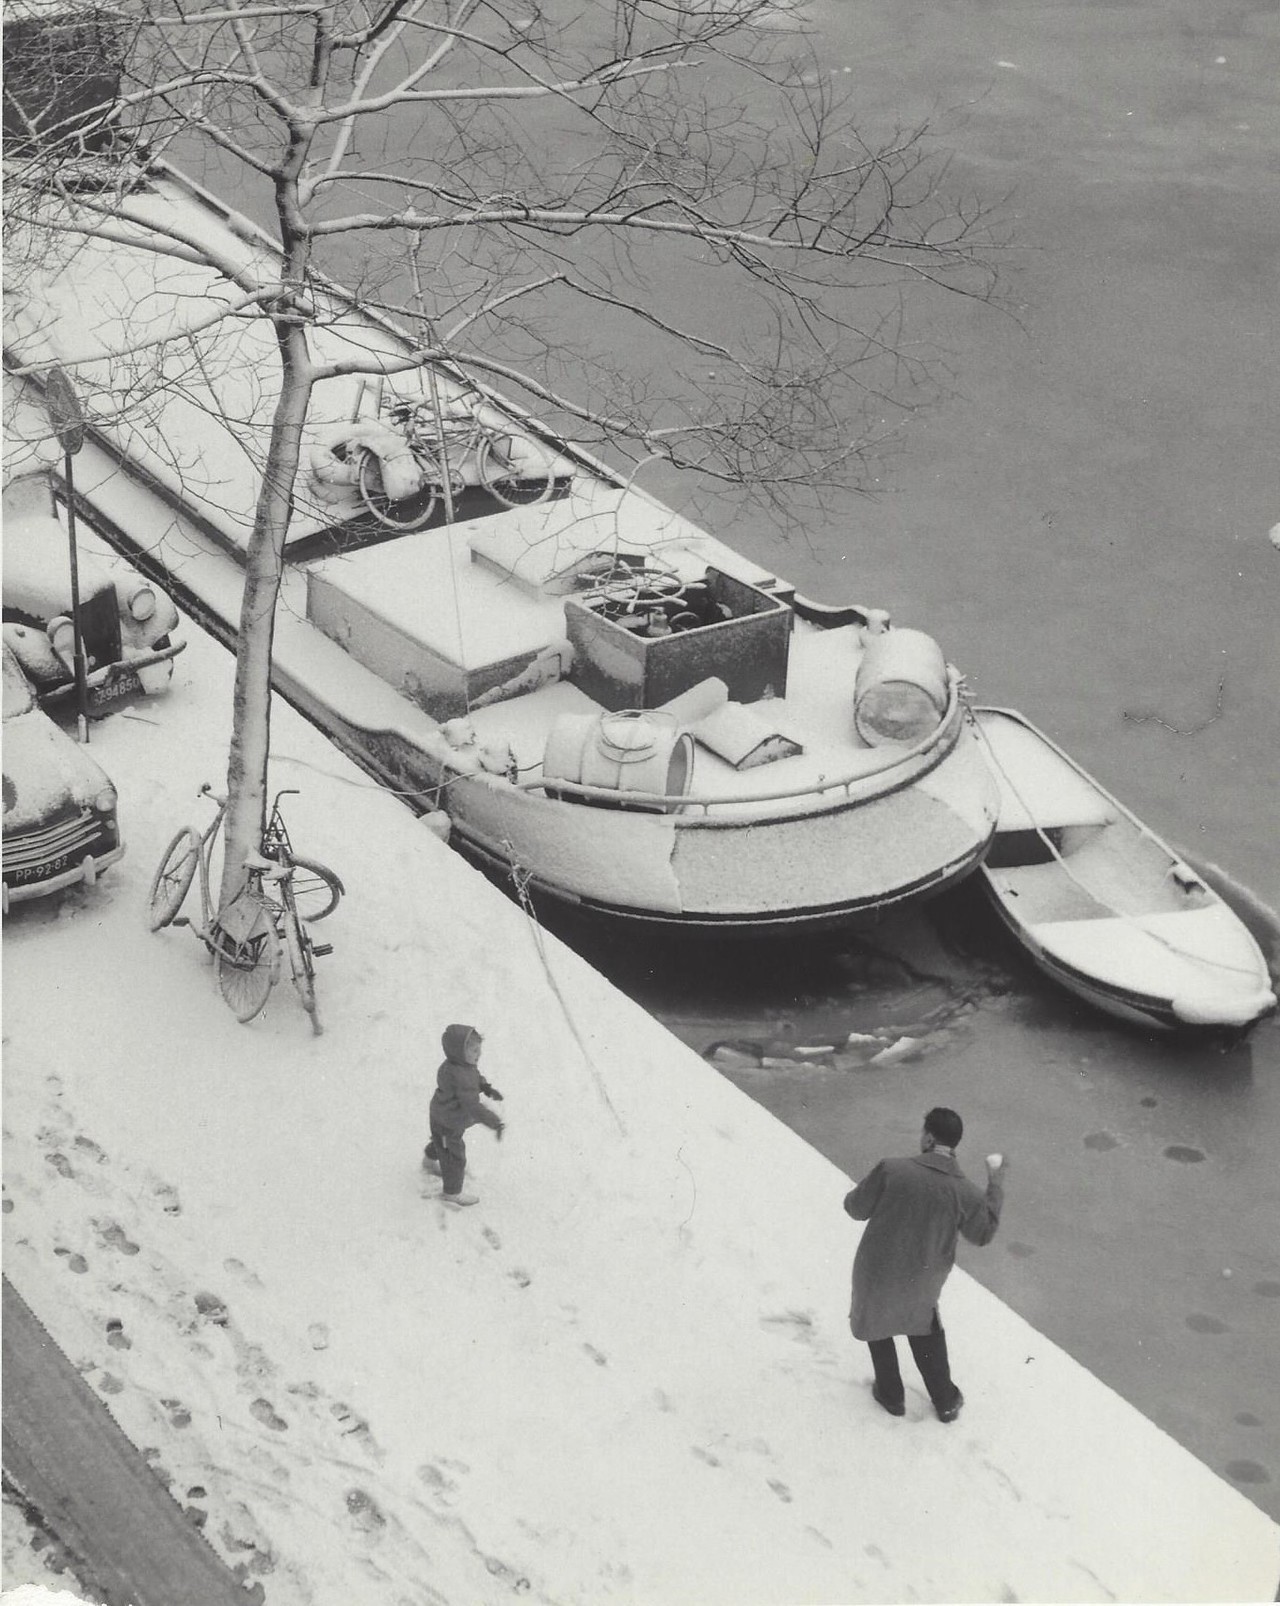 Снежки, Амстердам, 1950-е. Фотограф Кис Шерер